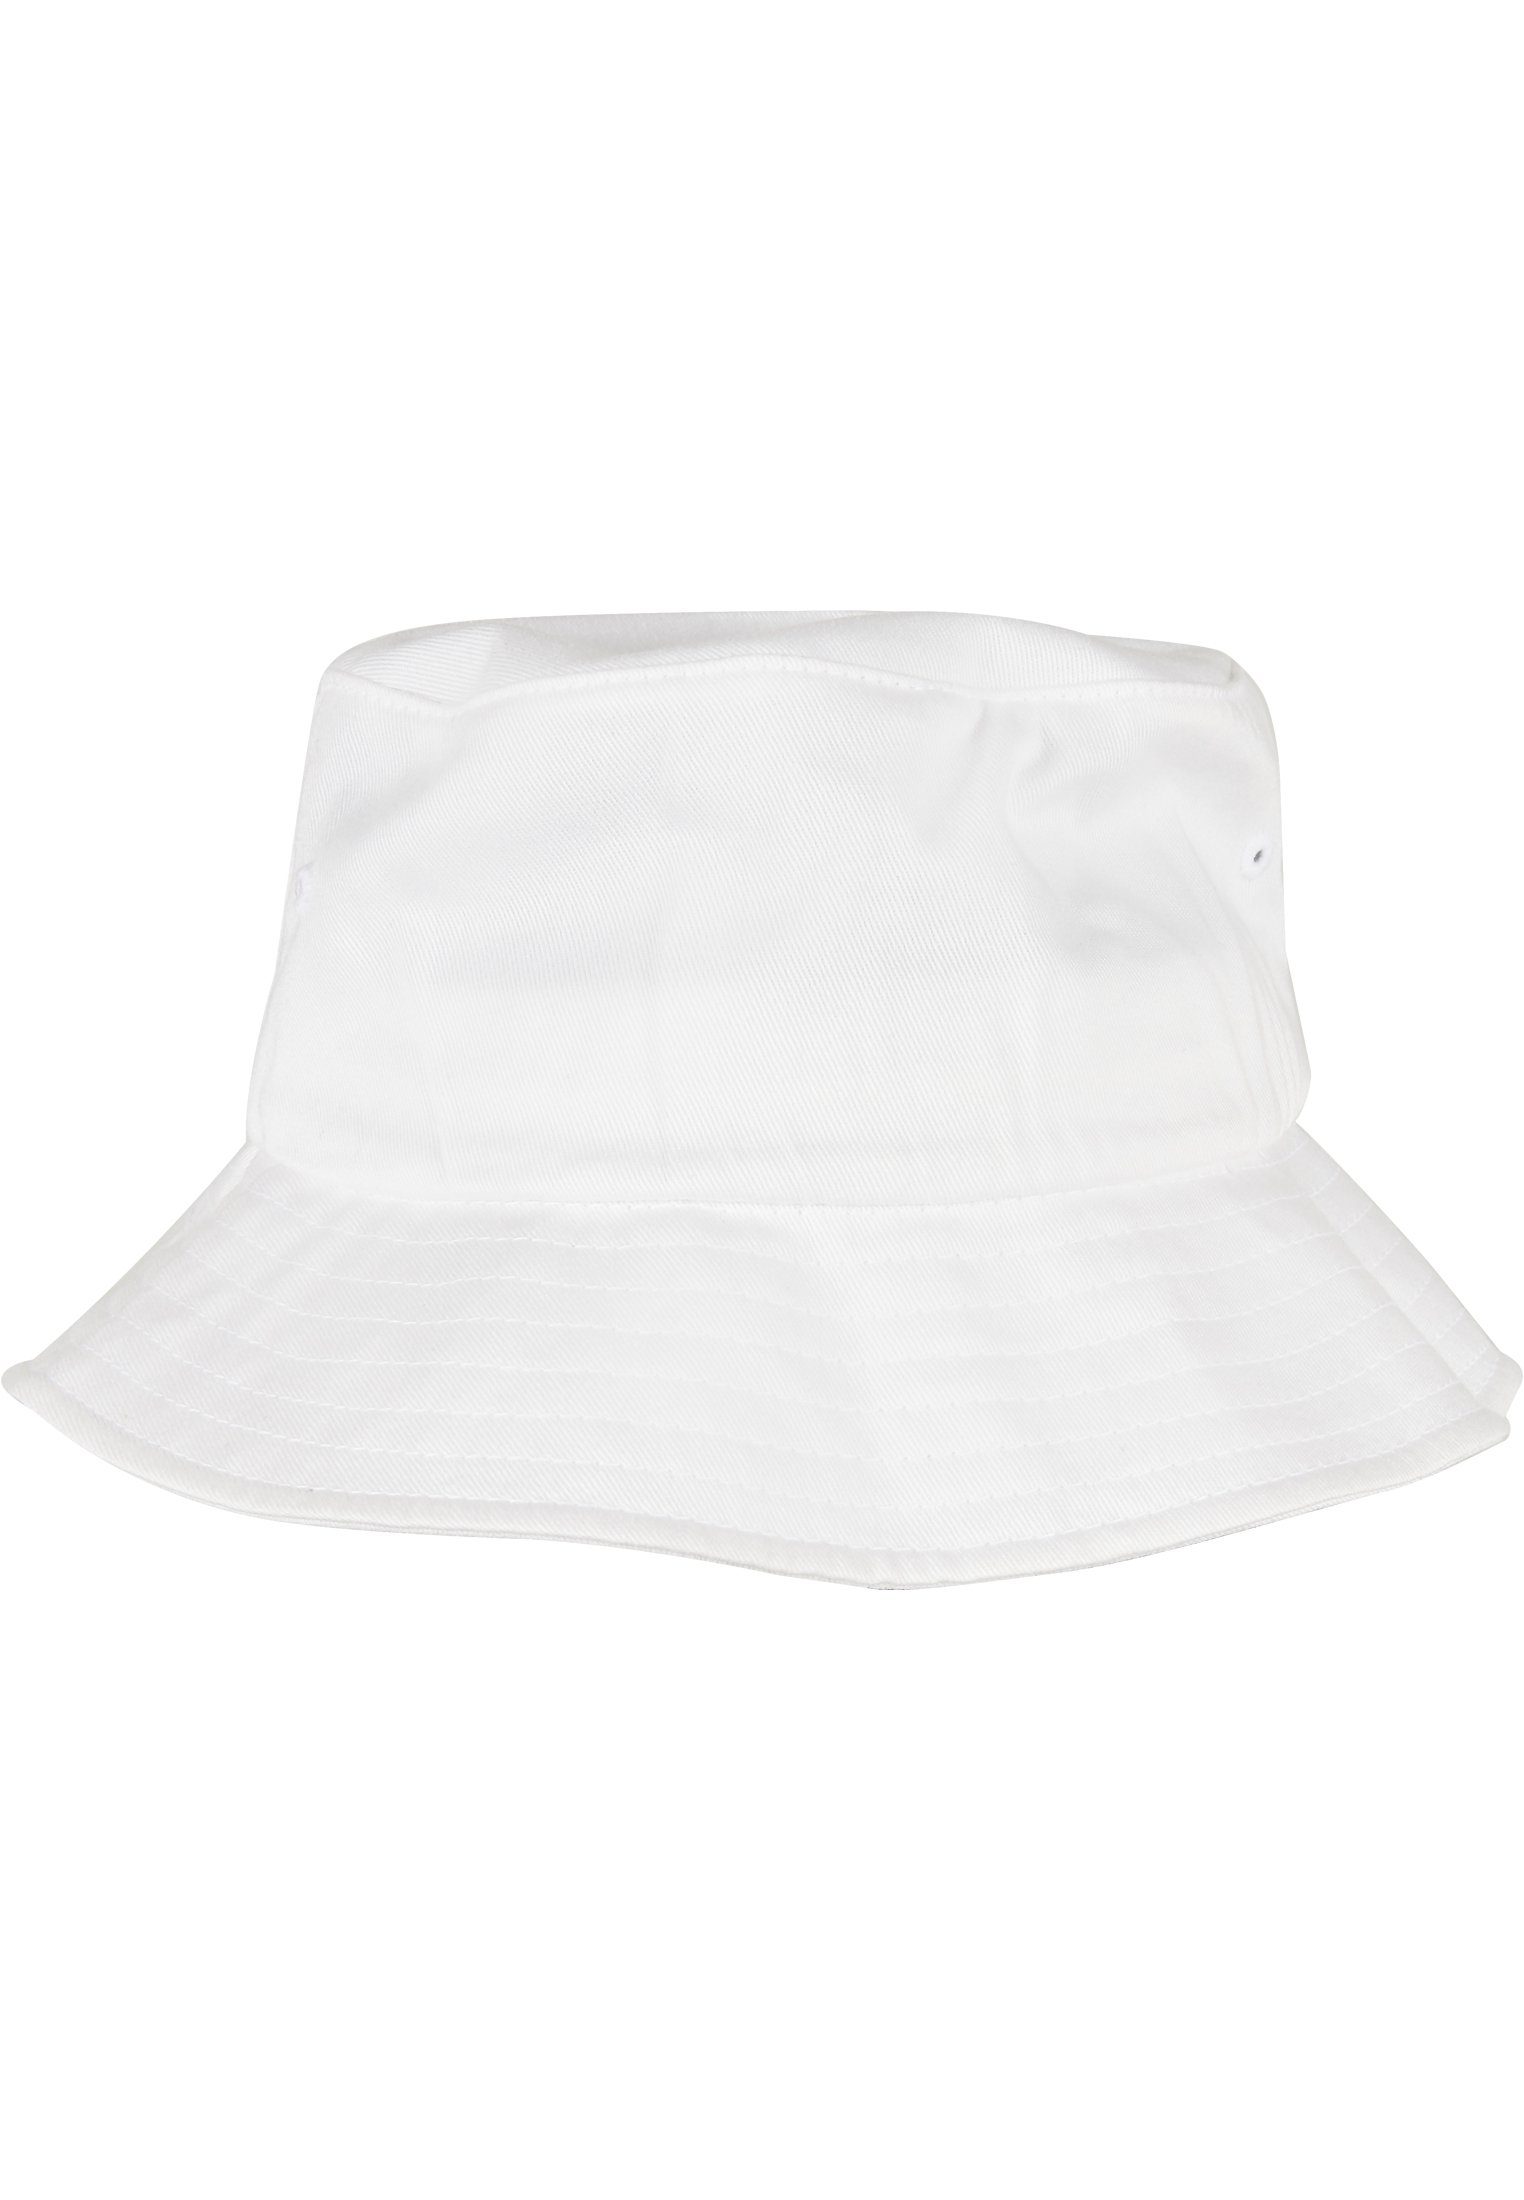 Accessoires Flex Flexfit Cap Bucket white Organic Cotton Hat